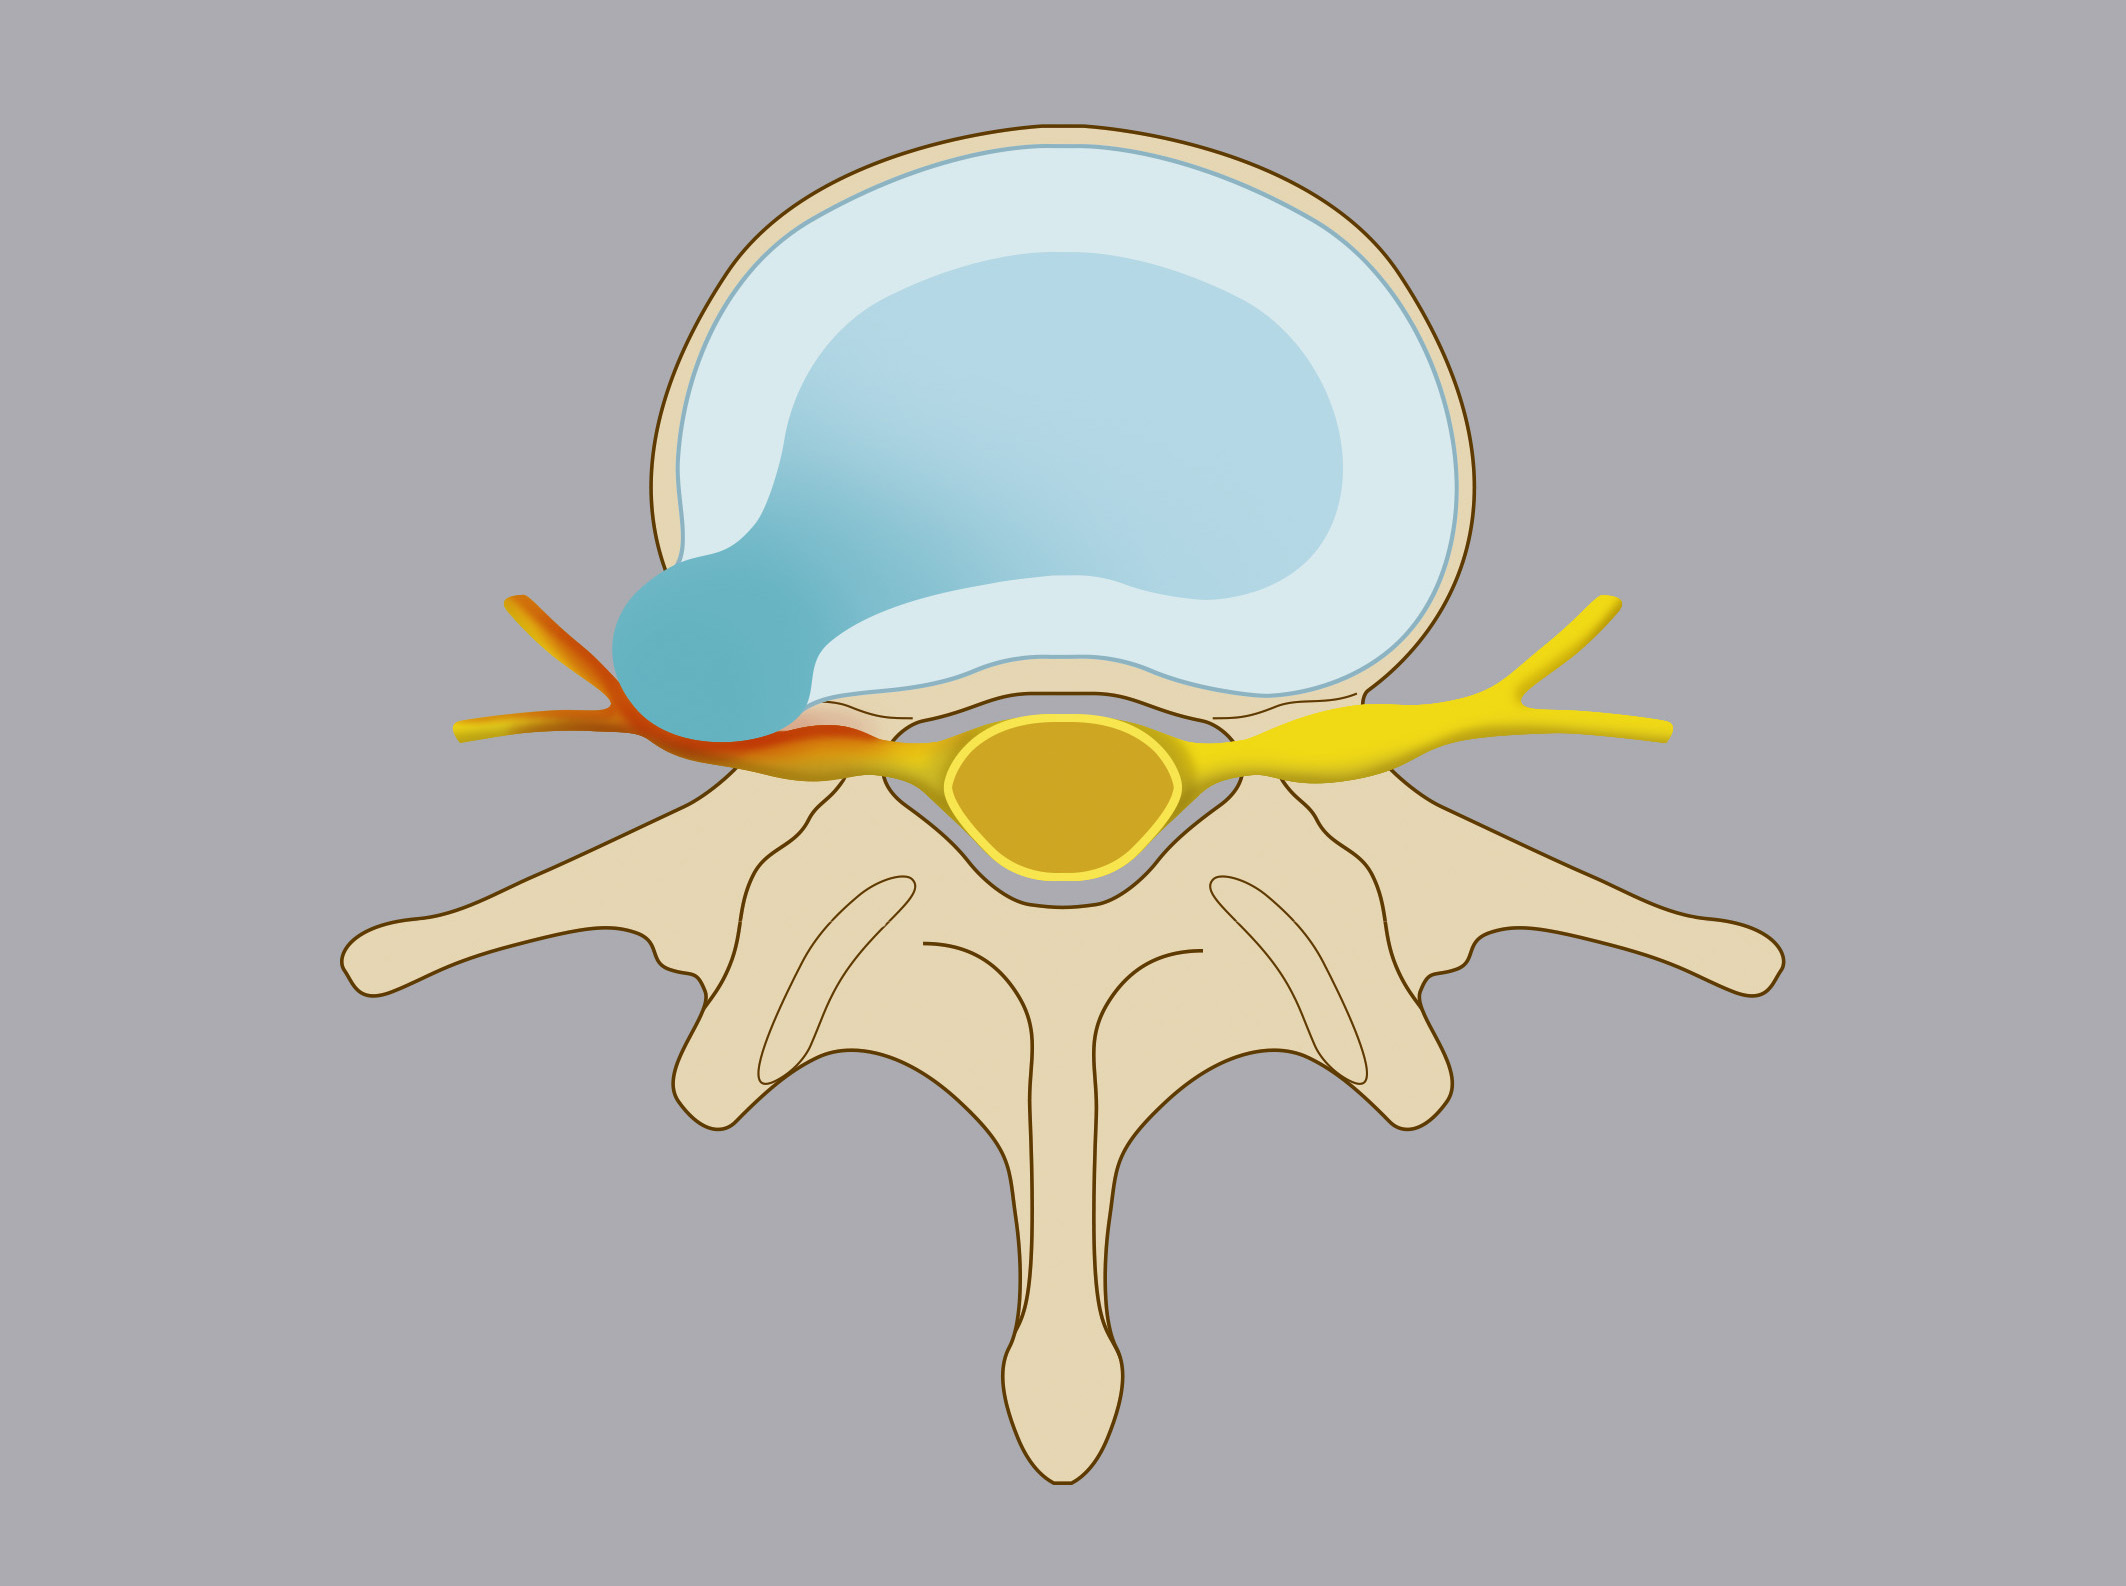 Ernia extraforaminale. Il nucleo polposo del disco migra lateralmente rispetto il forame di coniugazione.